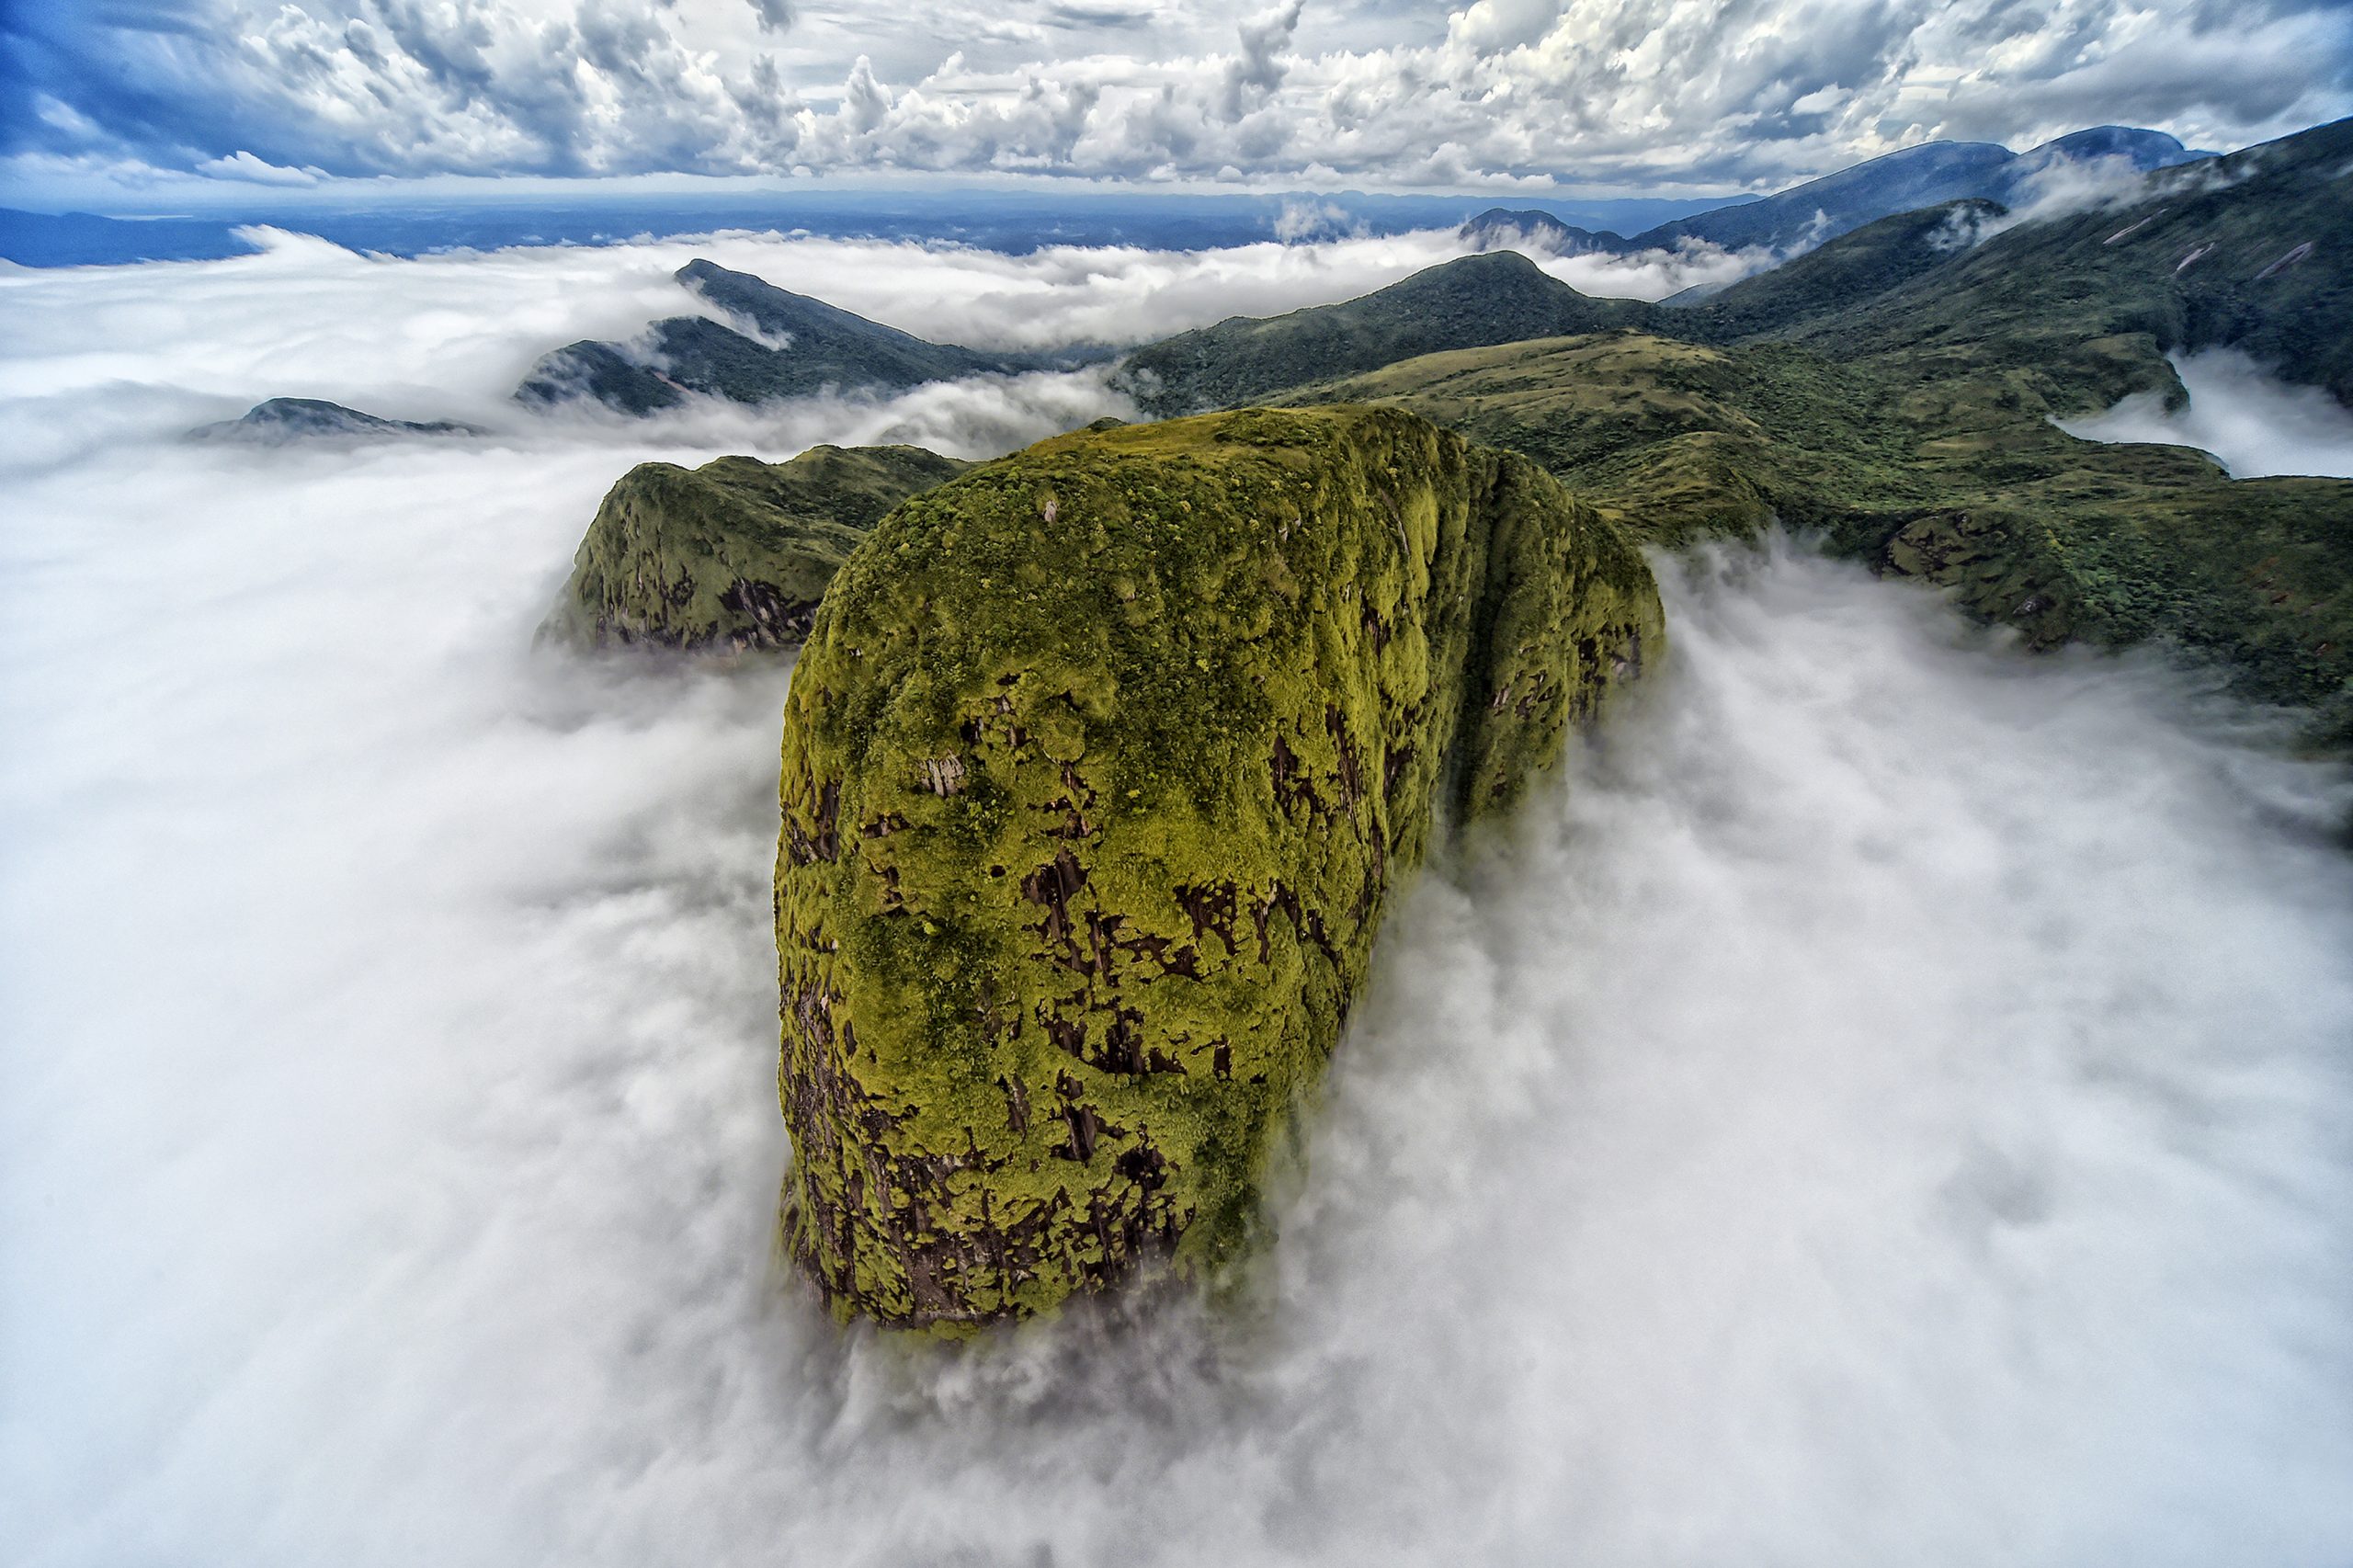 Imagem da serra do mar coberta por nuvens foi uma das premiadas no TNC Photo Contest 2021